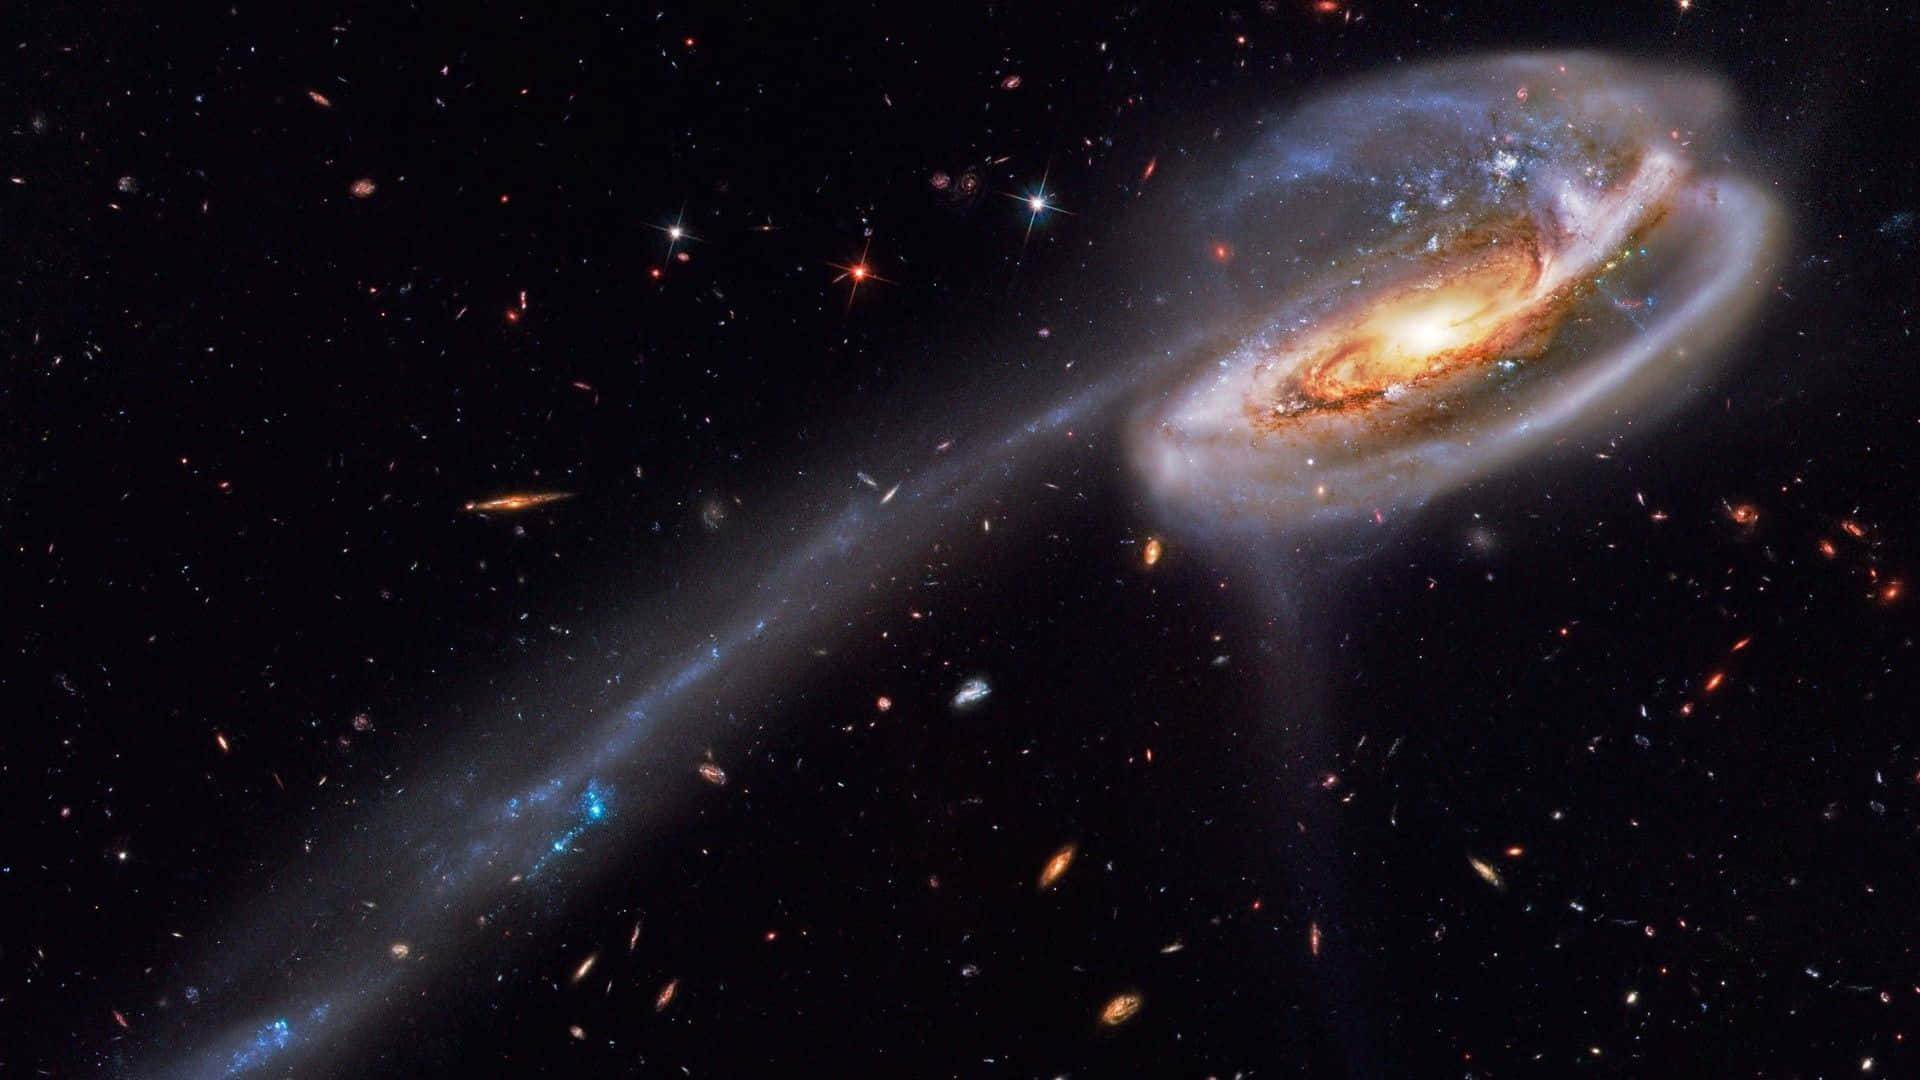 Tadpolegalax Rymdnebulosa. Wallpaper